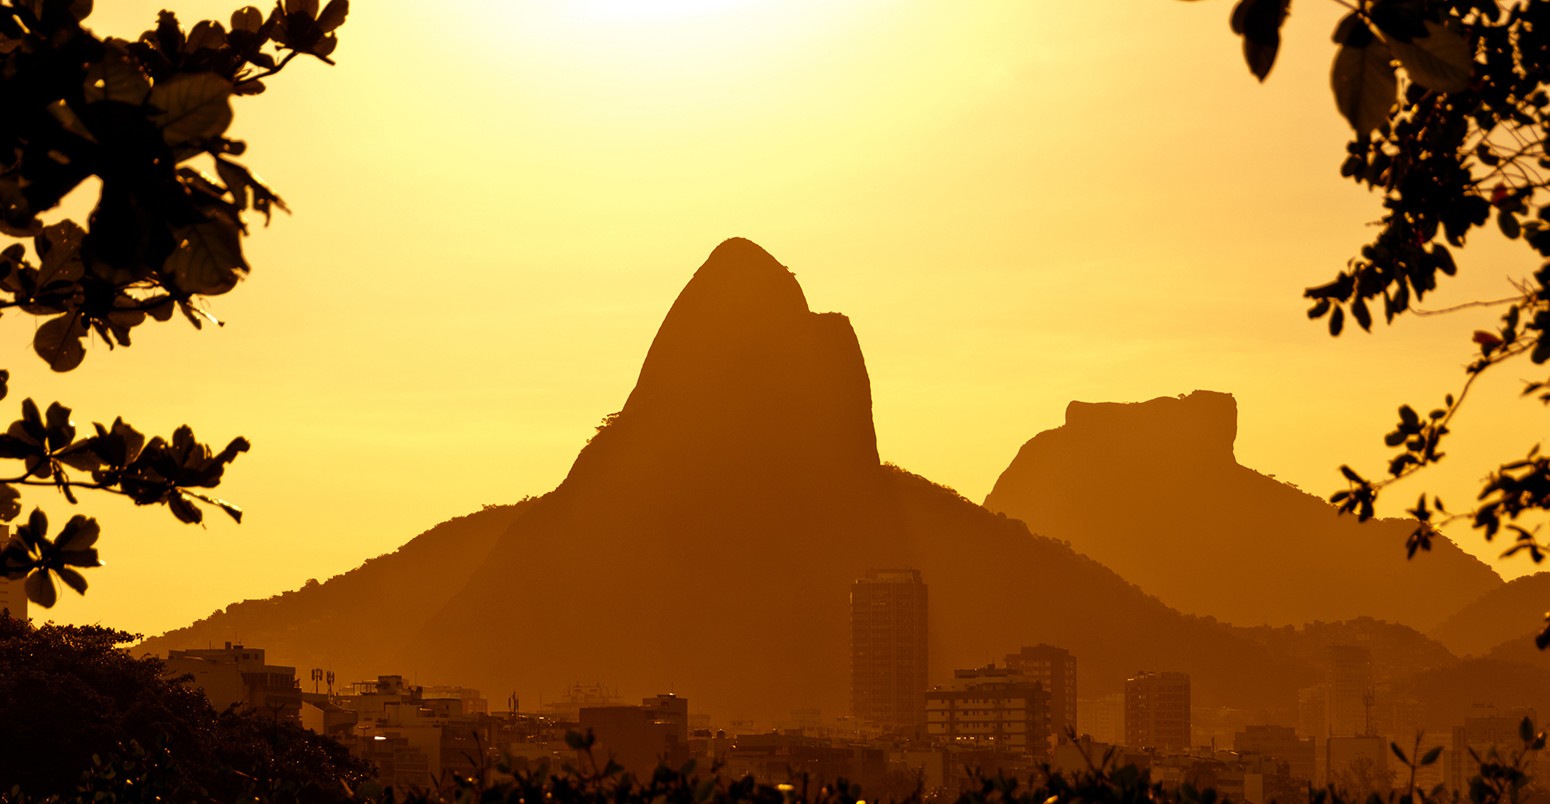 Sun goes down behind the mountains of Rio de Janeiro